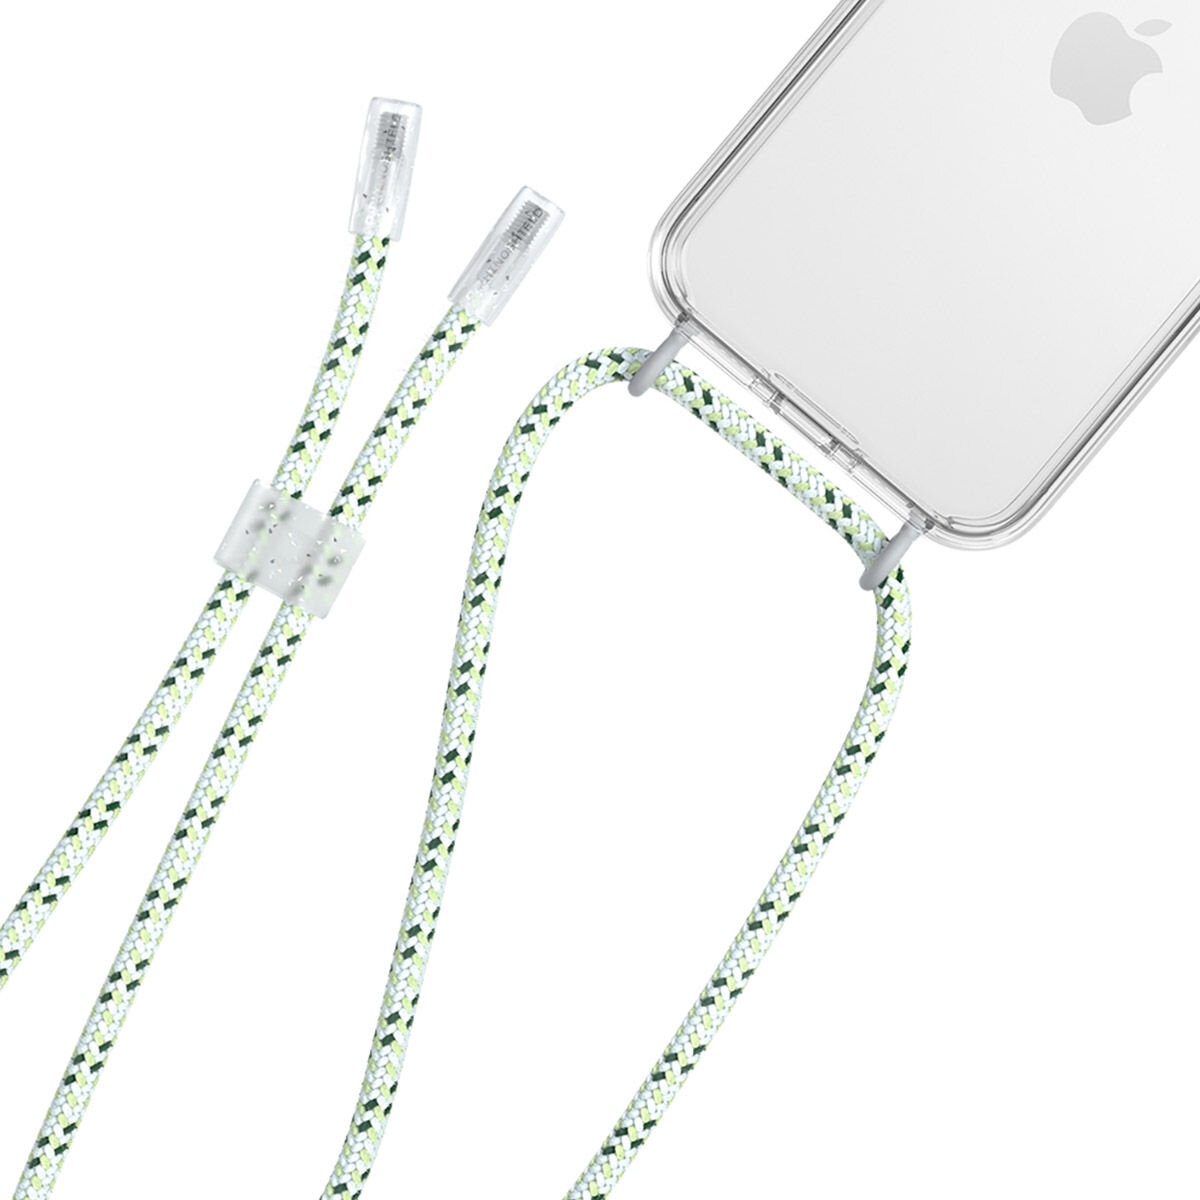 犀牛盾 iPhone 14 Clear 透明防摔手機殼 + 9H 3D滿版螢幕玻璃保護貼 + 手機掛繩